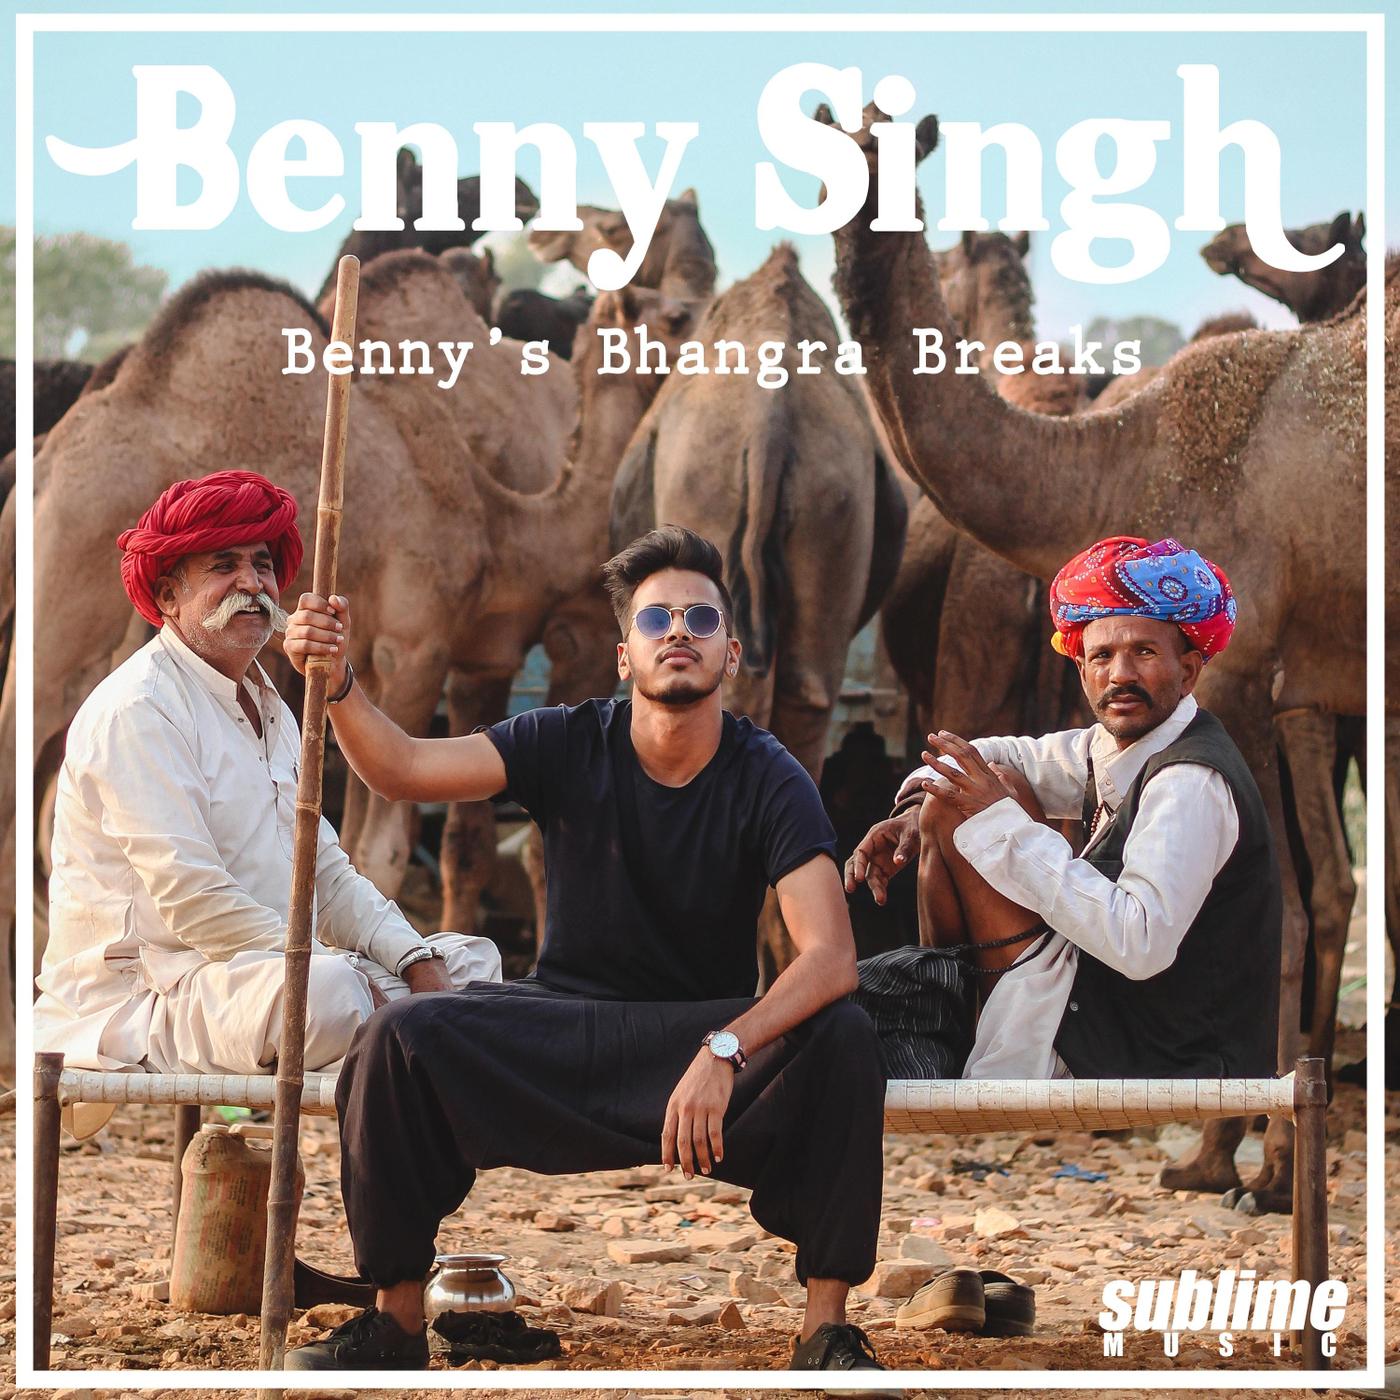 Benny's Bhangra Breaks